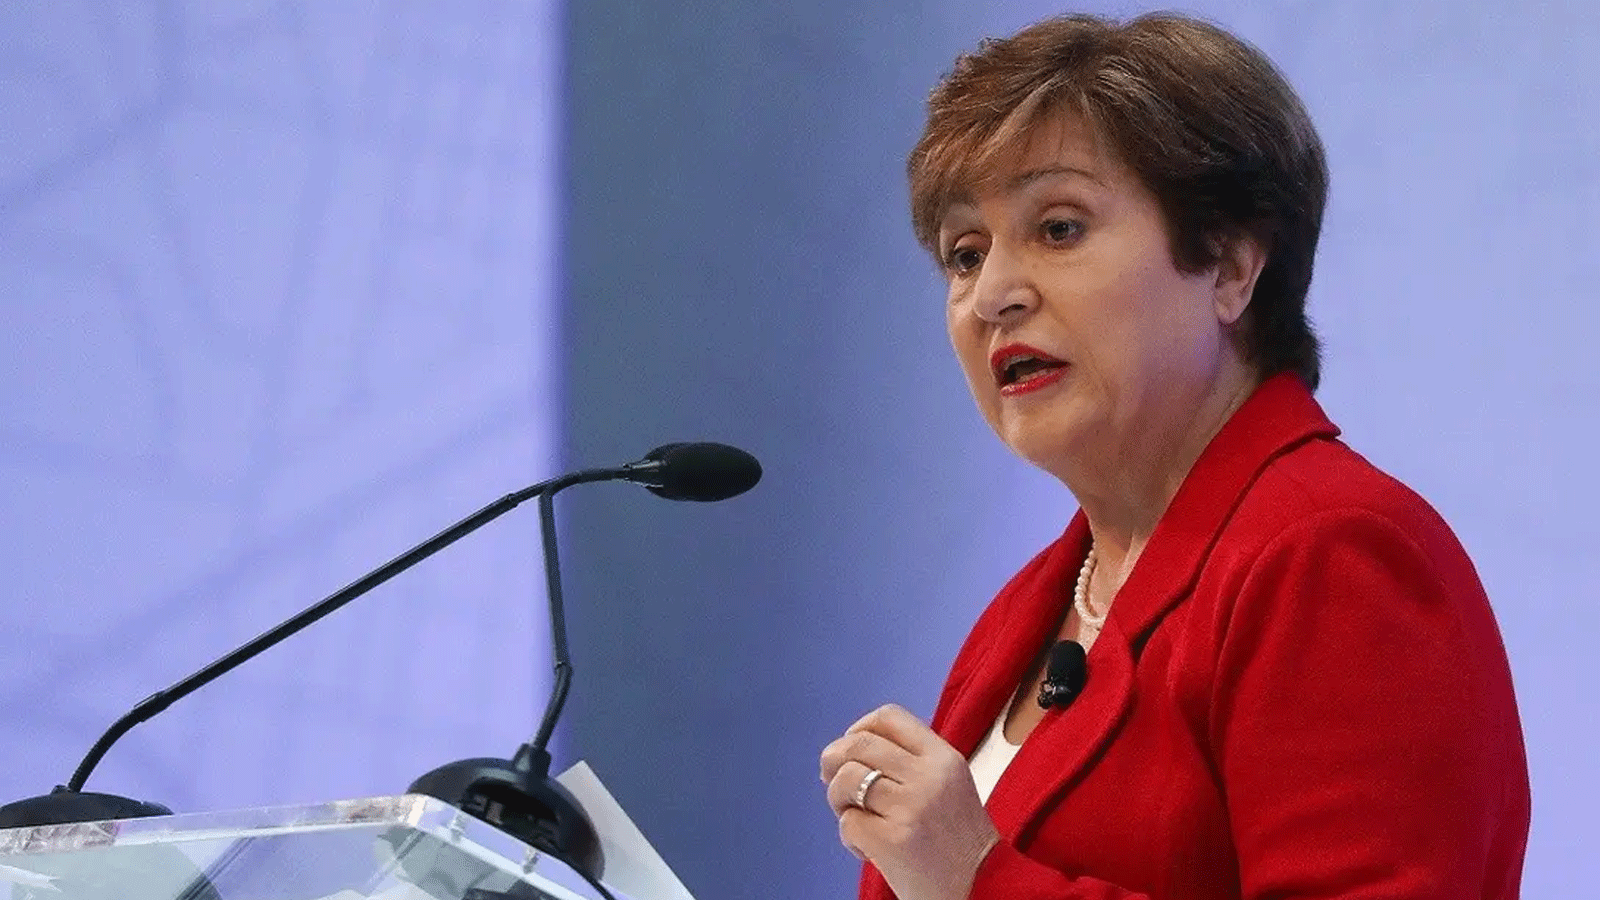 مديرة صندوق النقد الدولي كريستالينا غورغييفا 